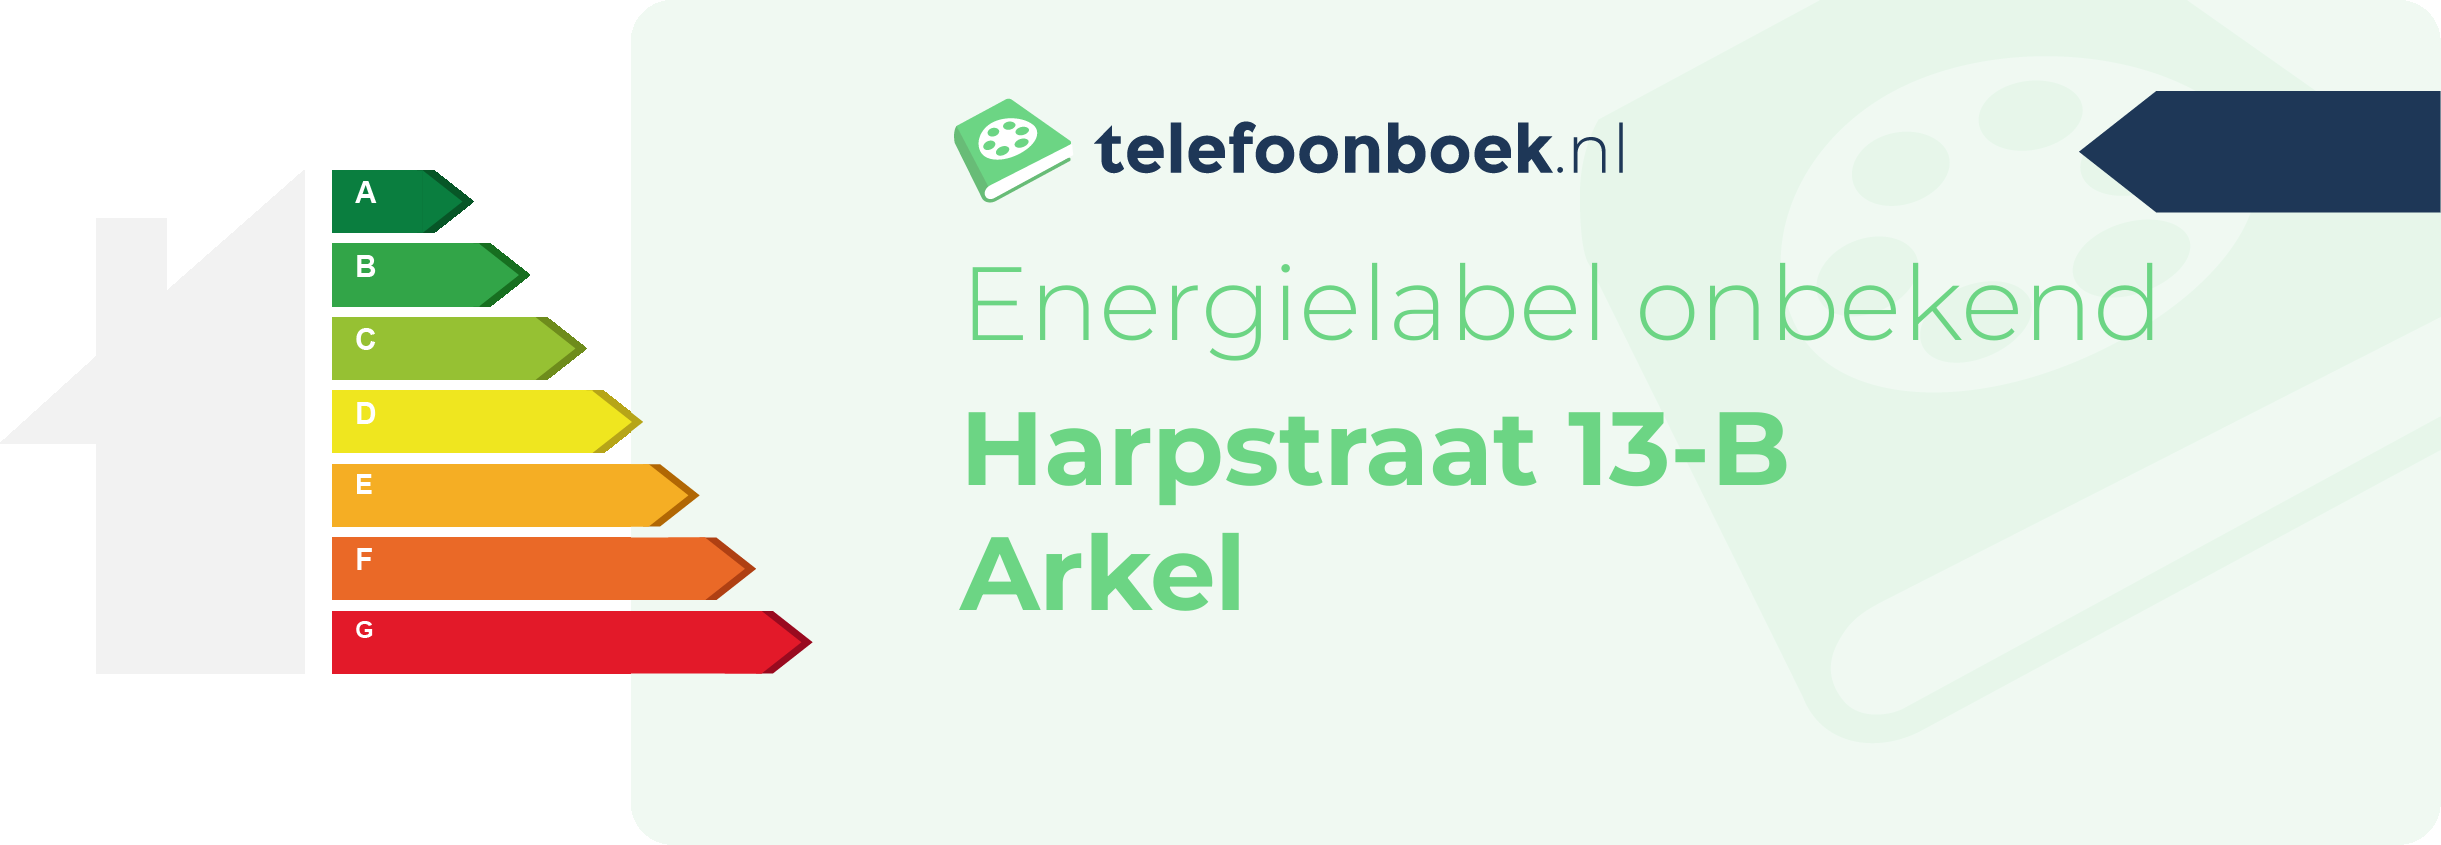 Energielabel Harpstraat 13-B Arkel